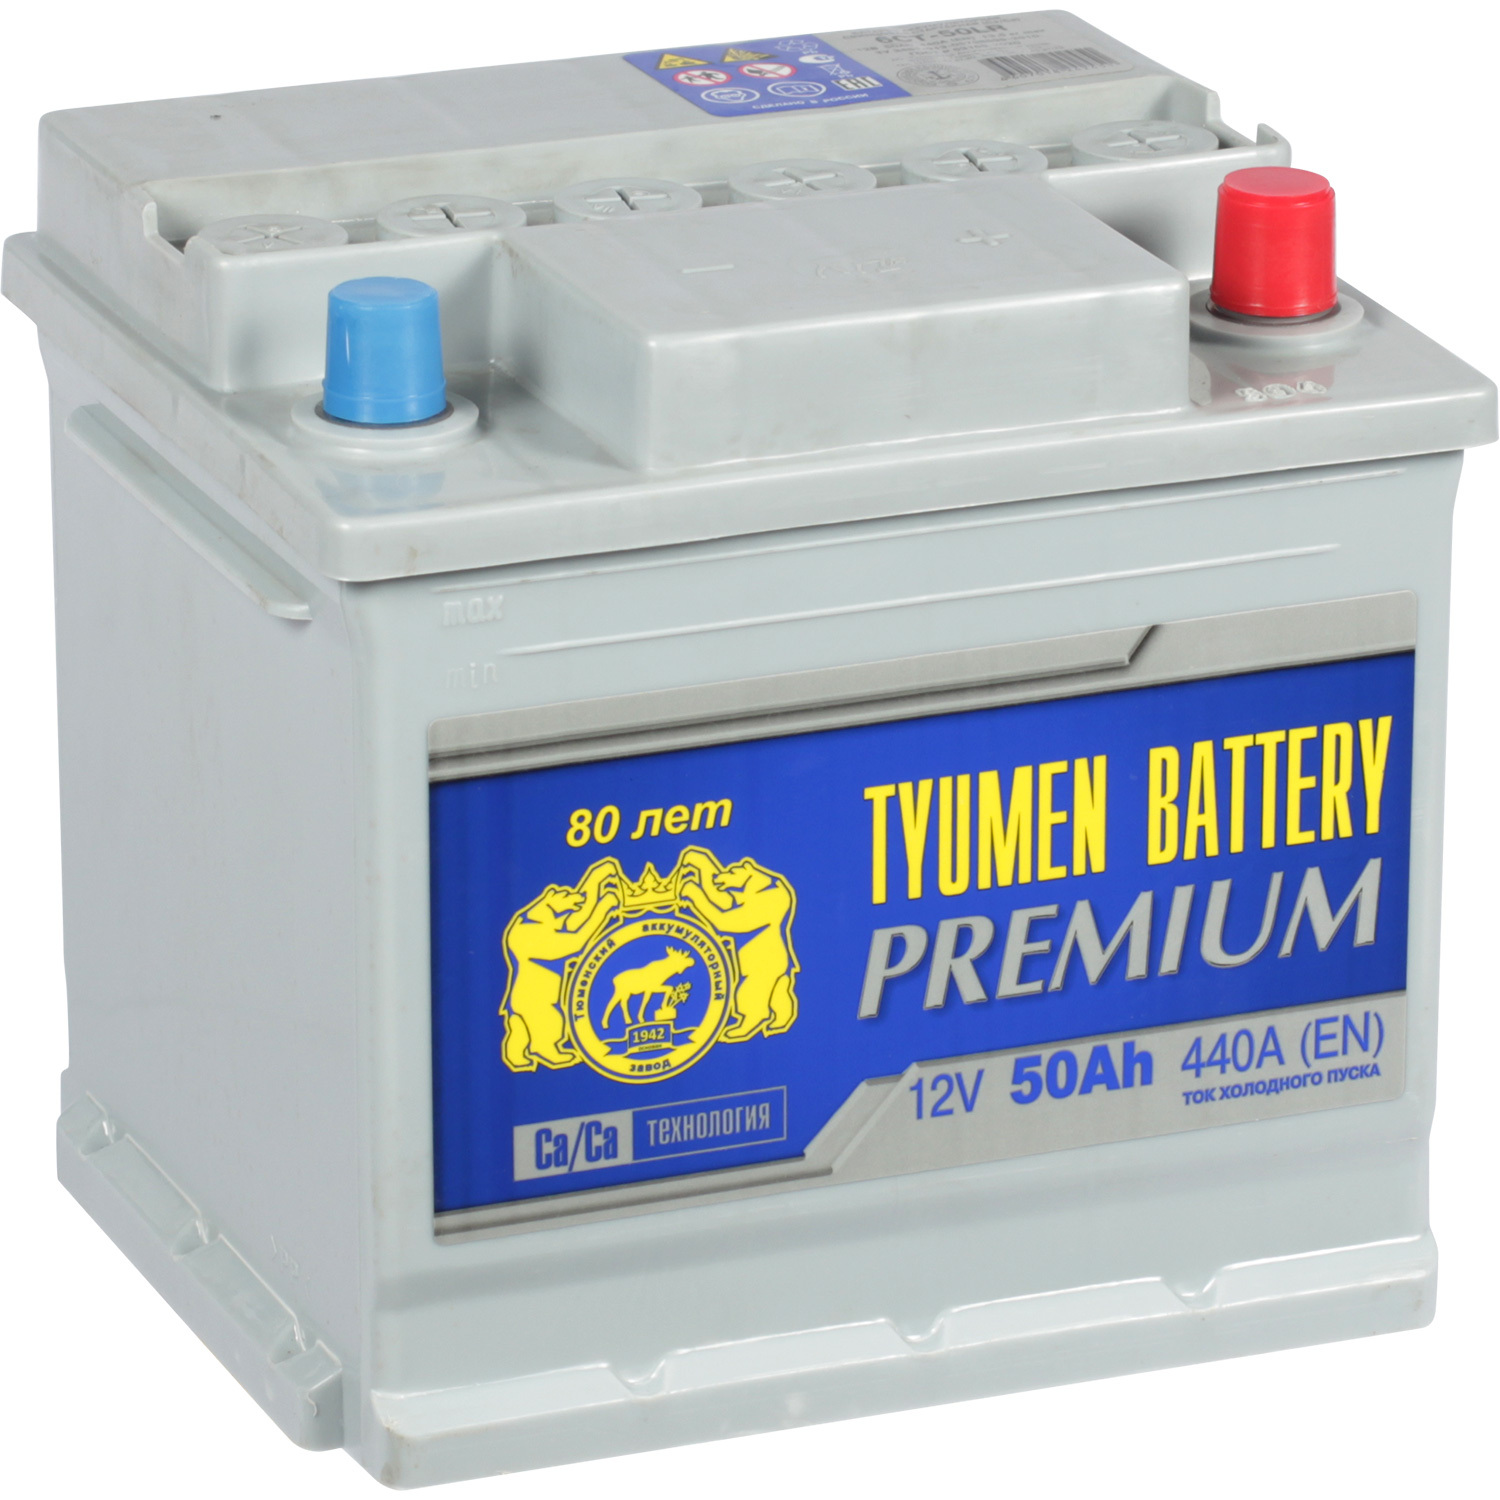 Tyumen Battery Автомобильный аккумулятор Tyumen Battery Premium 50 Ач обратная полярность L1 energizer автомобильный аккумулятор energizer 54 ач обратная полярность l1